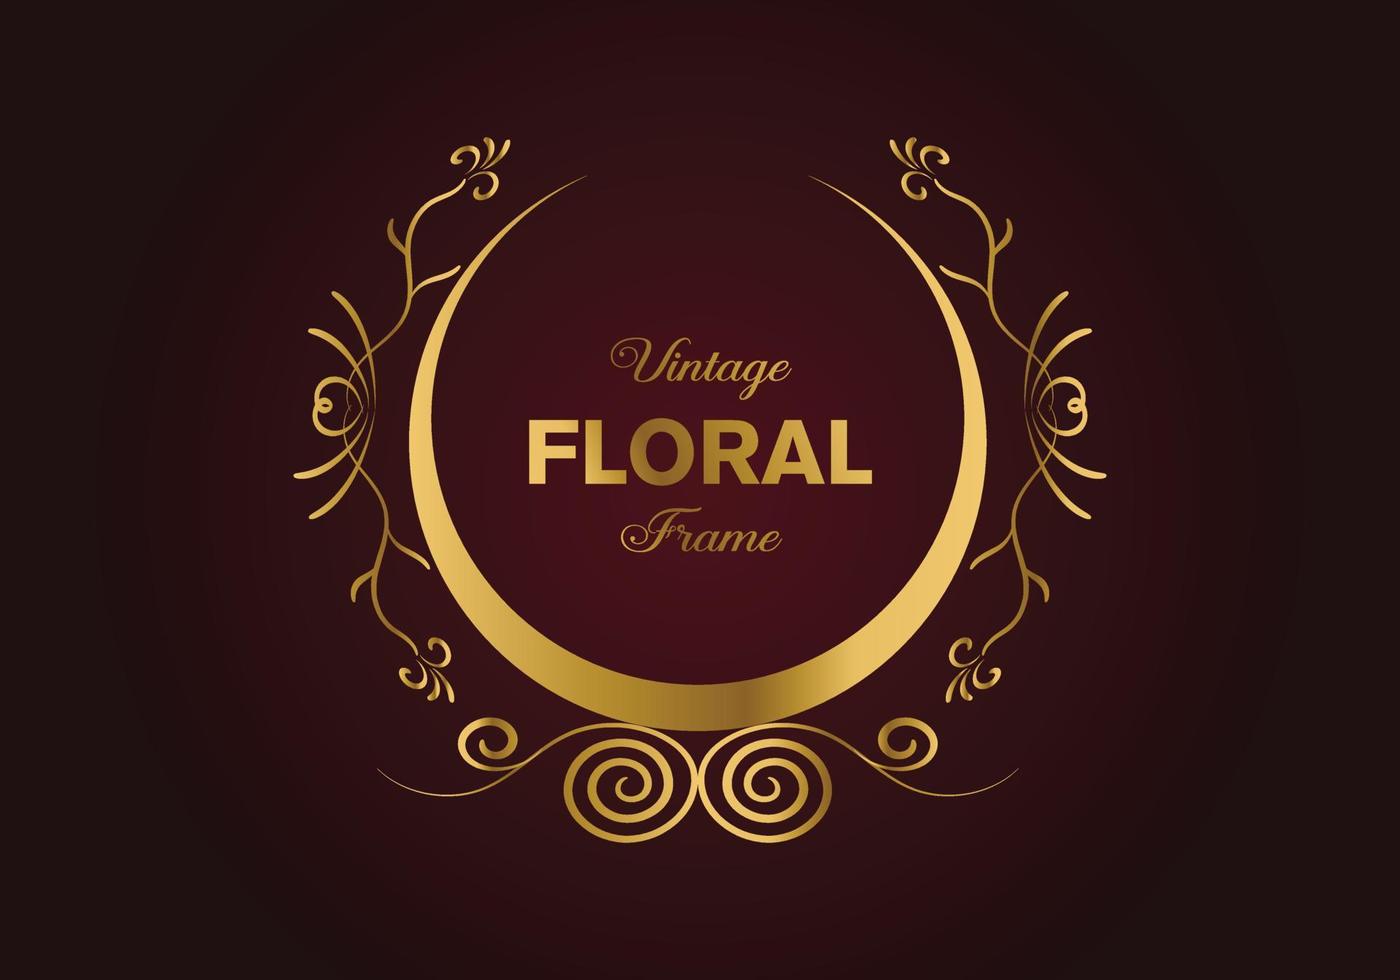 hermoso diseño de marco elegante floral dorado circular. ilustración libre. vector